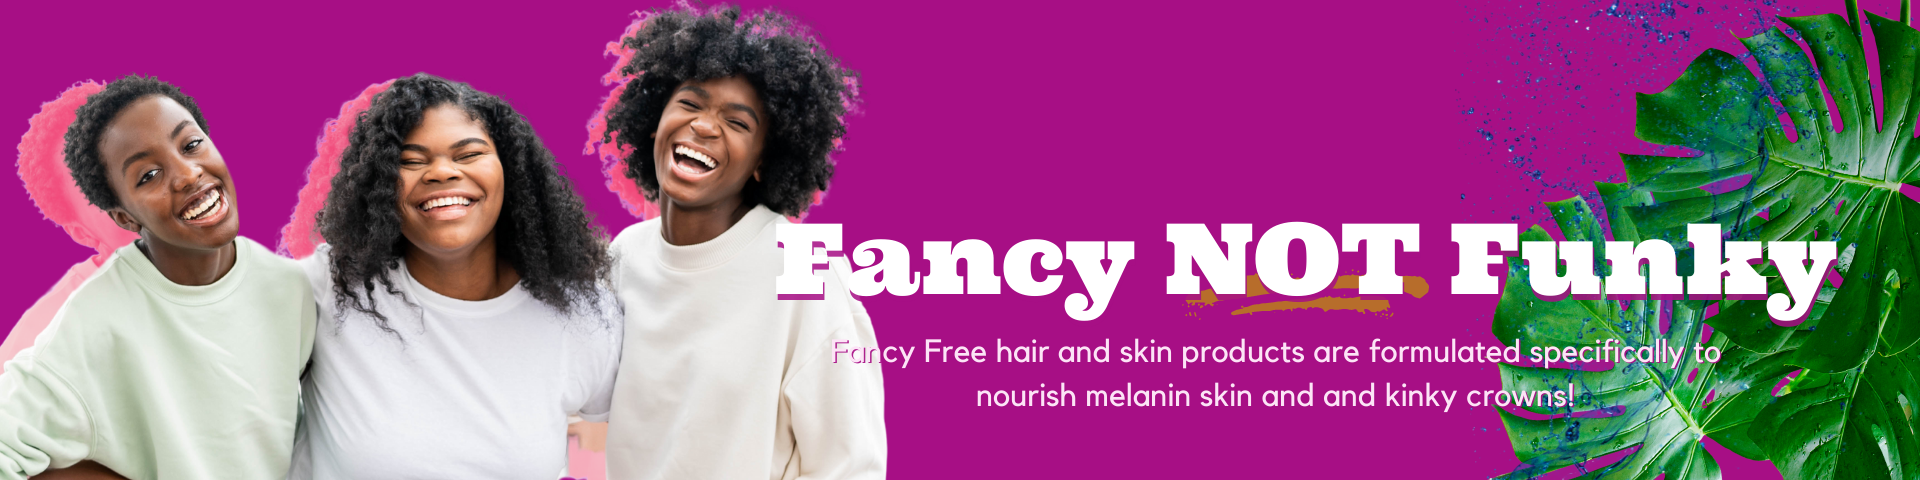 Fancy Free for Hair & Skin – The Fancy Factory